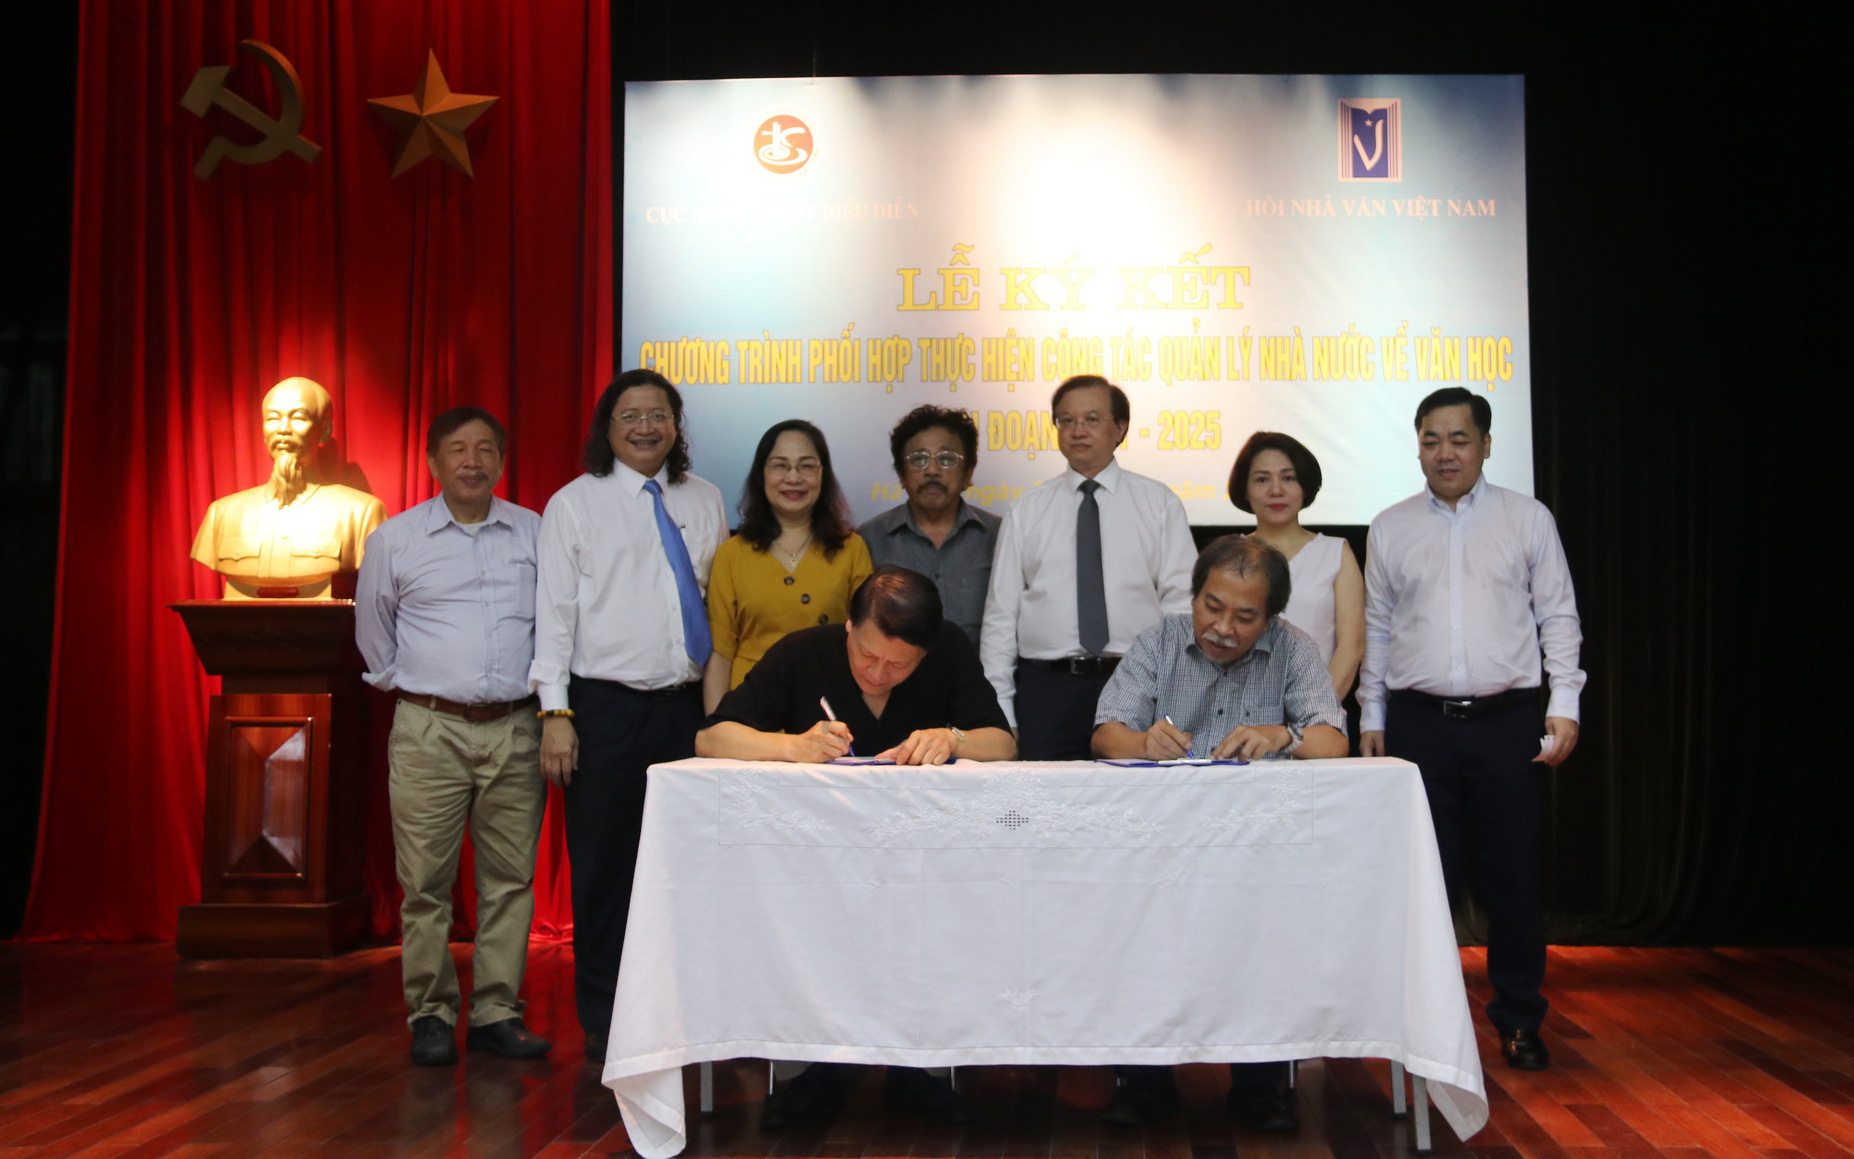 Cục Nghệ thuật biểu diễn và Hội Nhà văn Việt Nam ký kết phối hợp công tác quản lý nhà nước về văn học